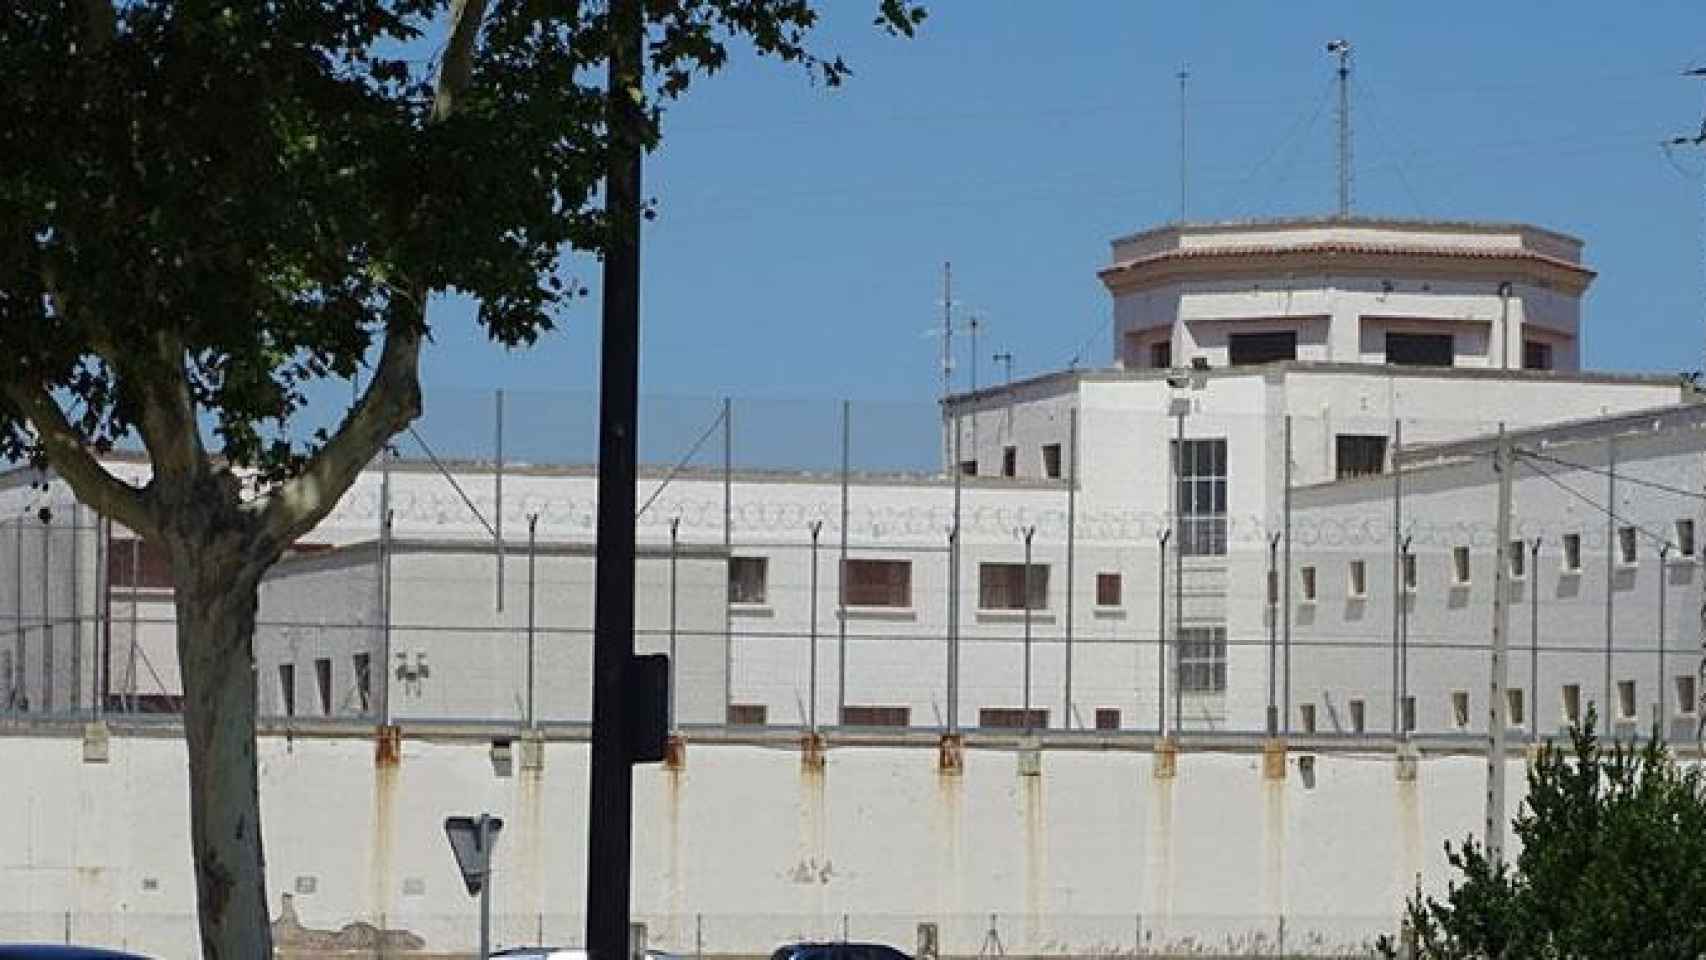 El exterior de la cárcel Ponent de Lleida, en una imagen de archivo / CG